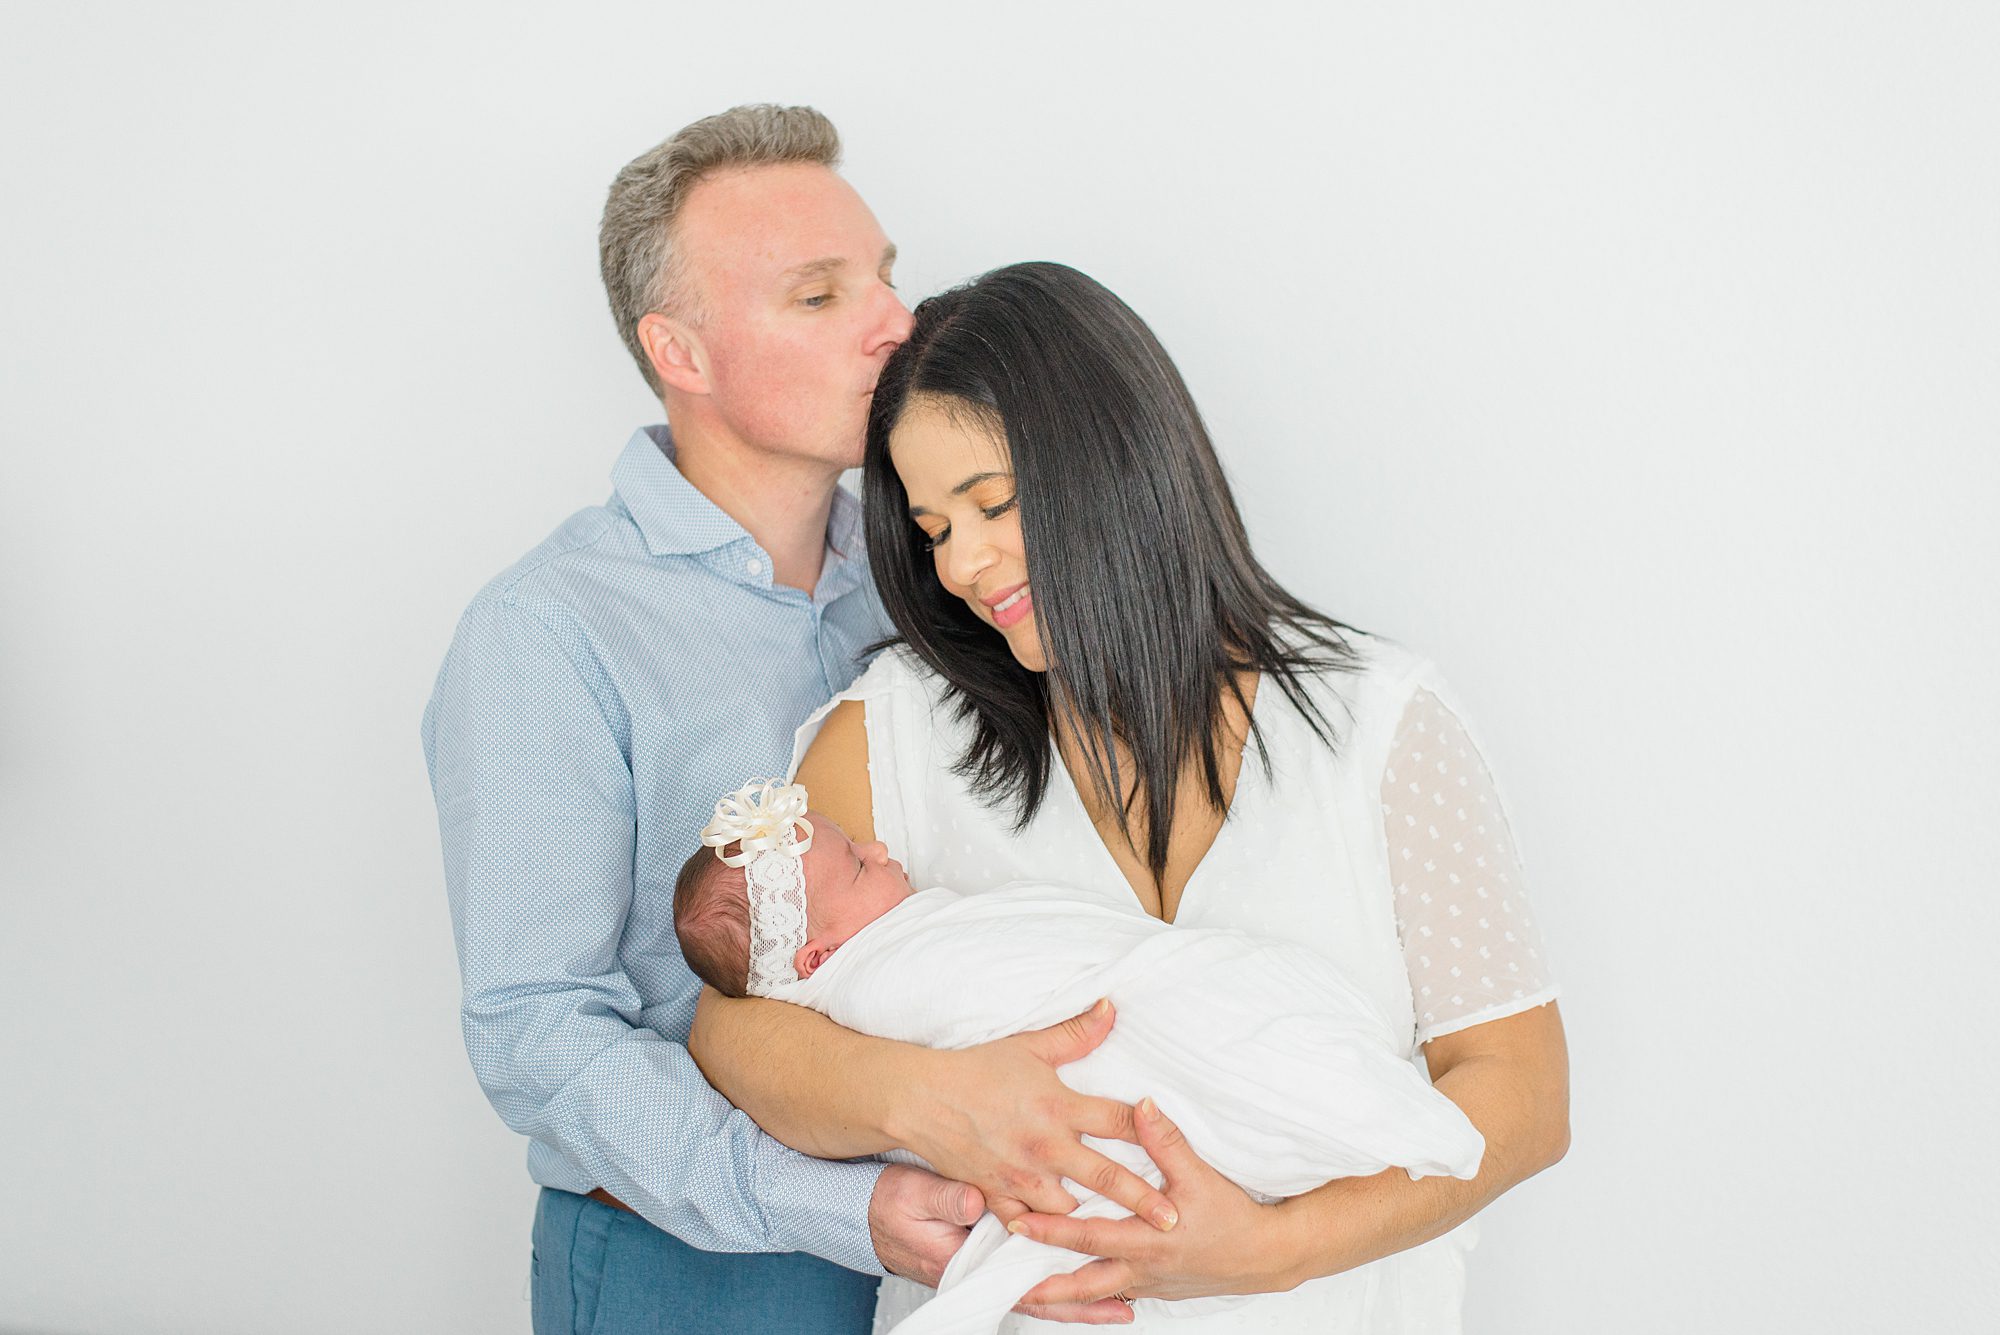 husband kisses wife's head while she holds newborn